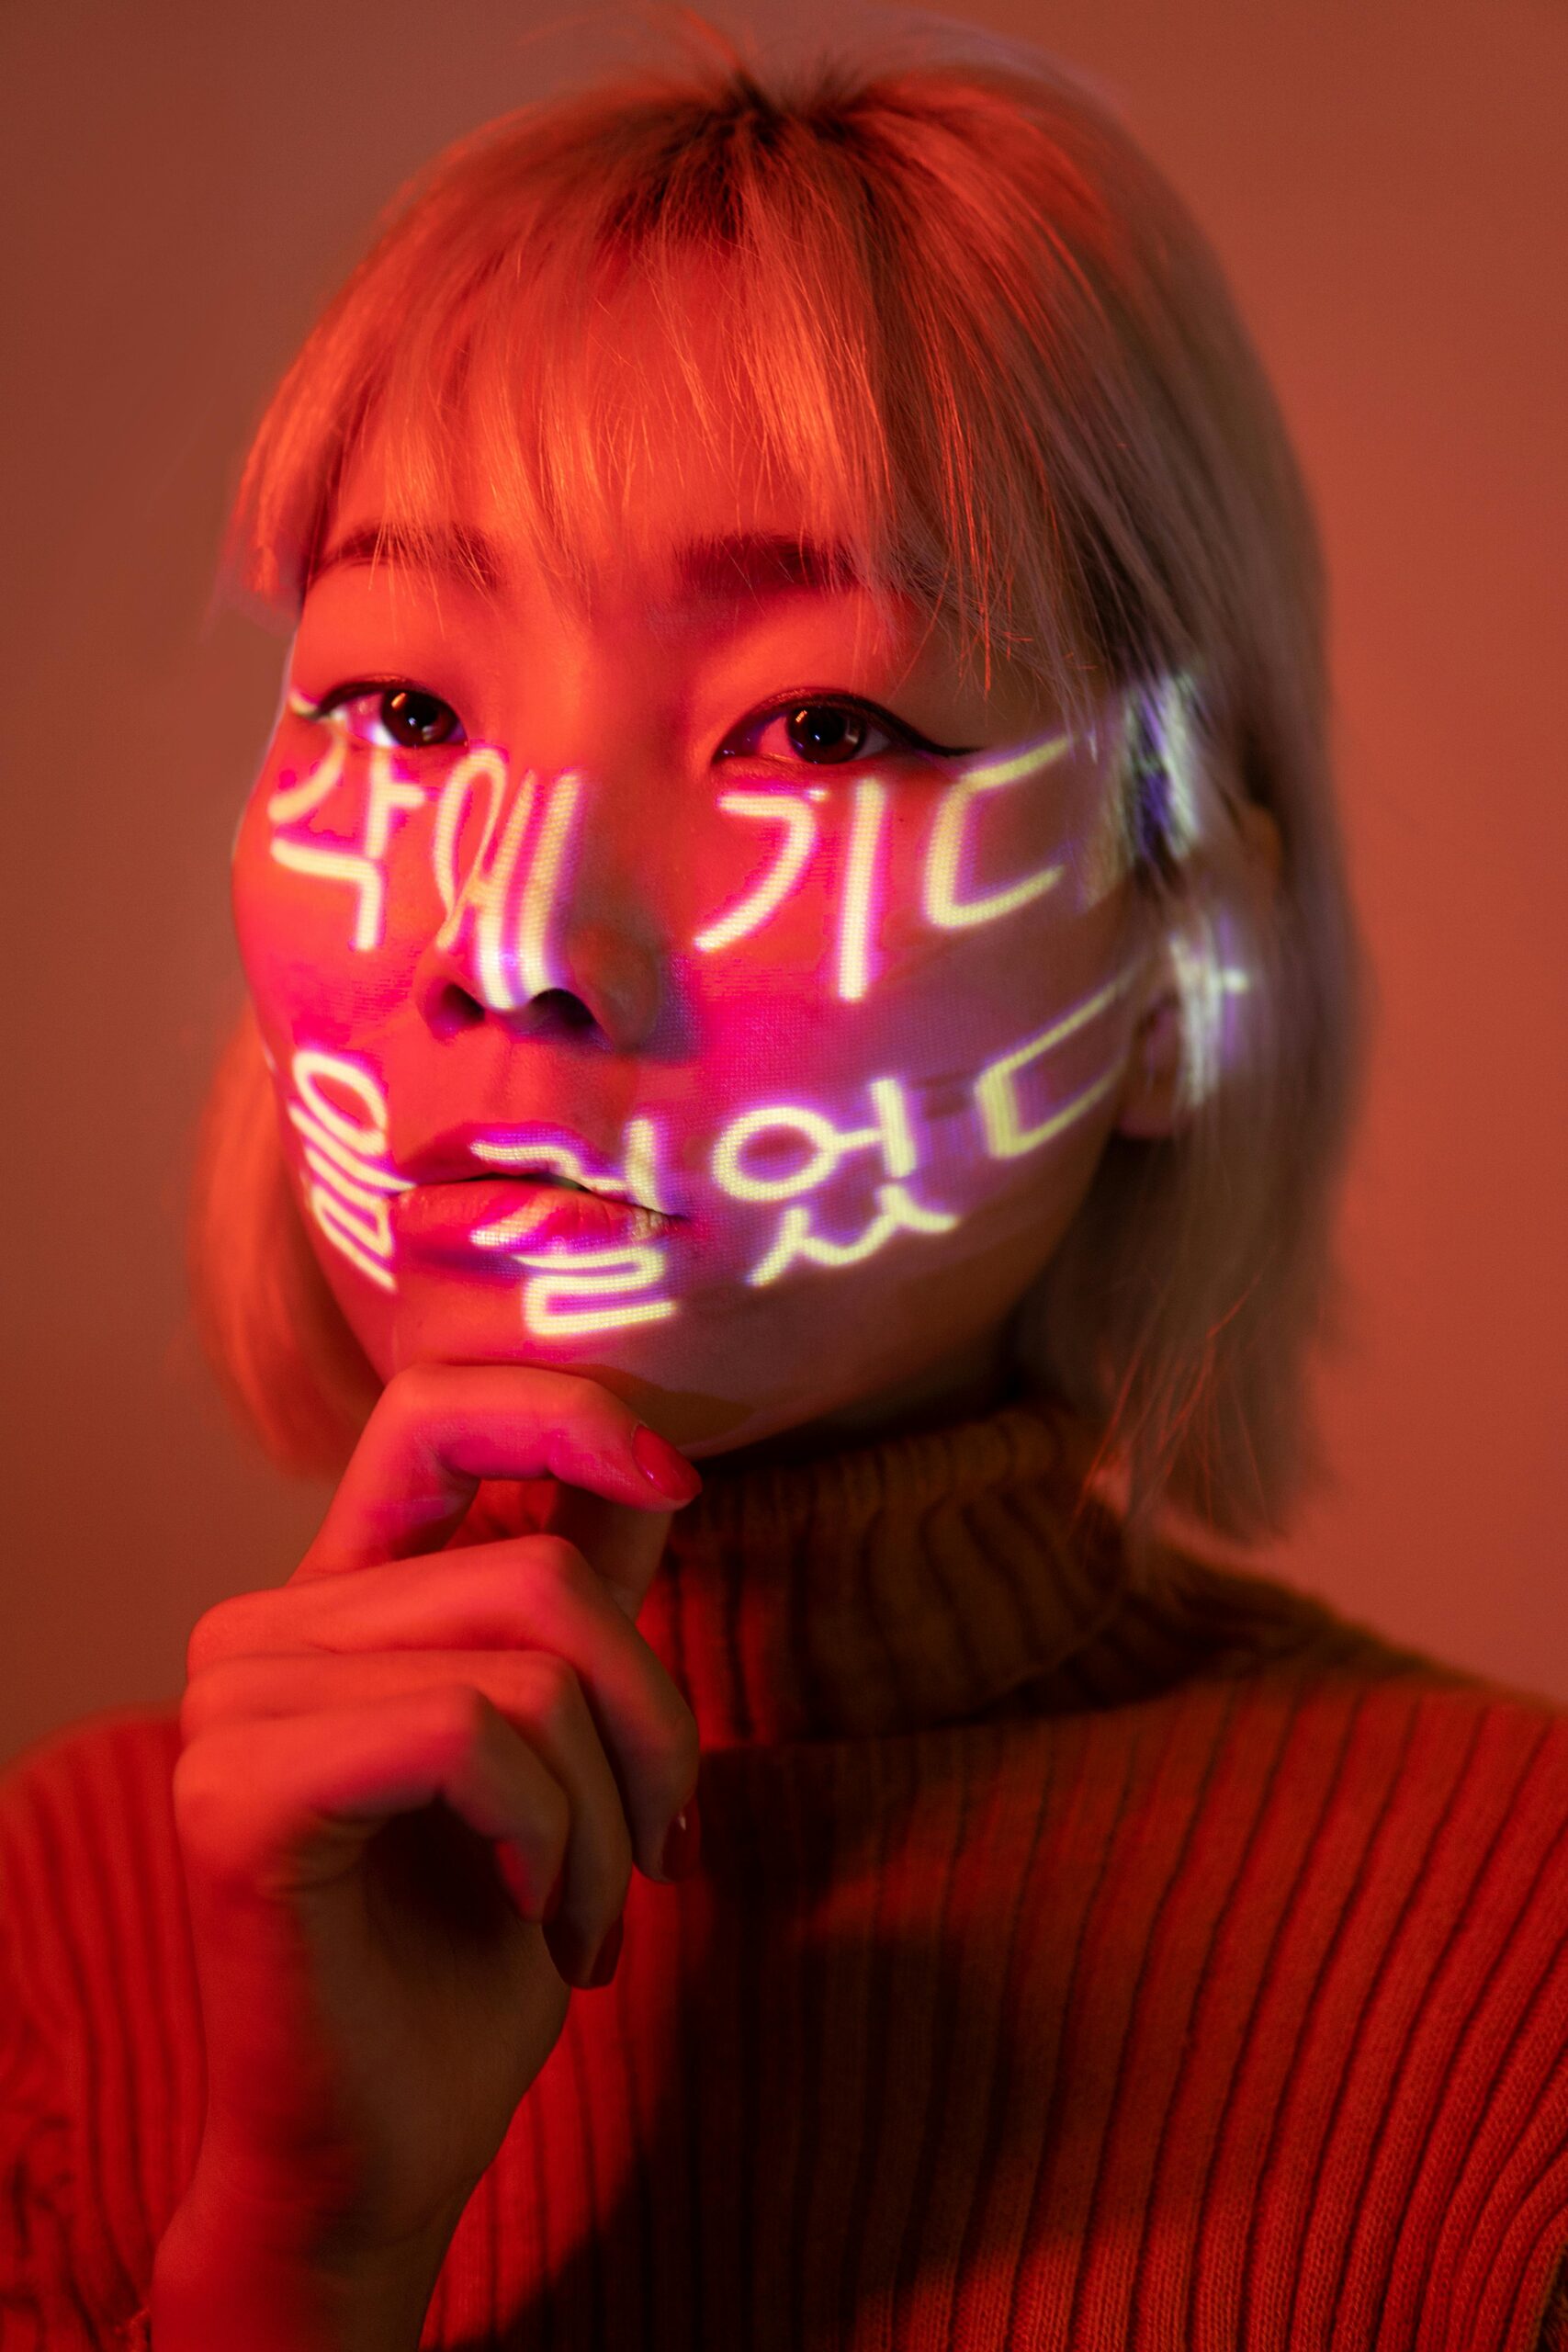 Eine asiatische Frau mit koreanischen Schriftzeichen auf dem Gesicht.